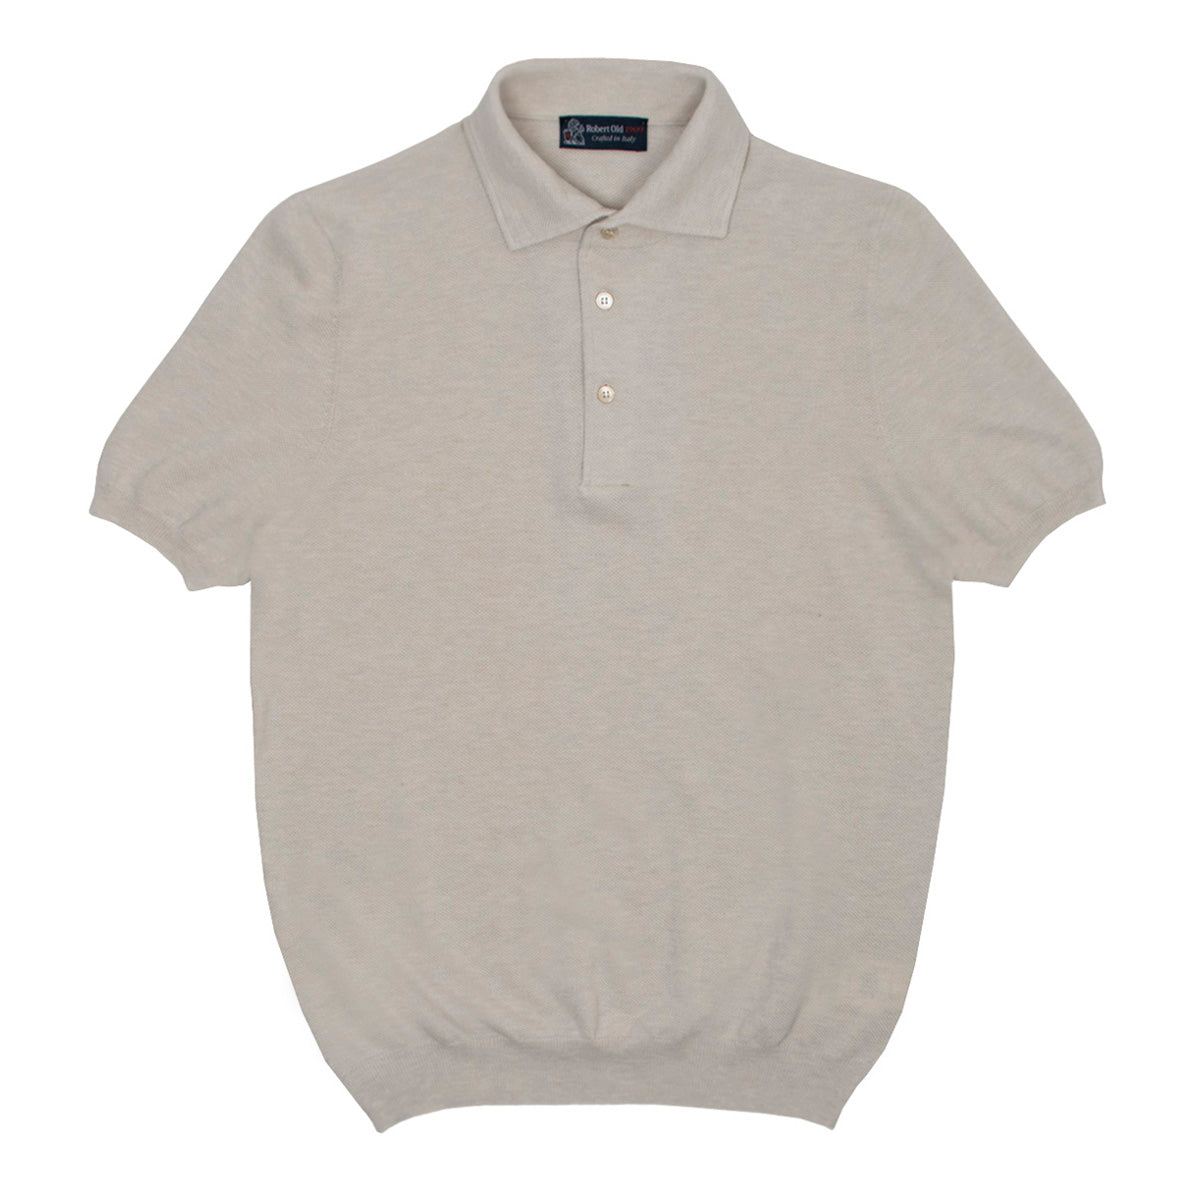 Beige Cotton Piqué Short Sleeve Polo Shirt  Robert Old   